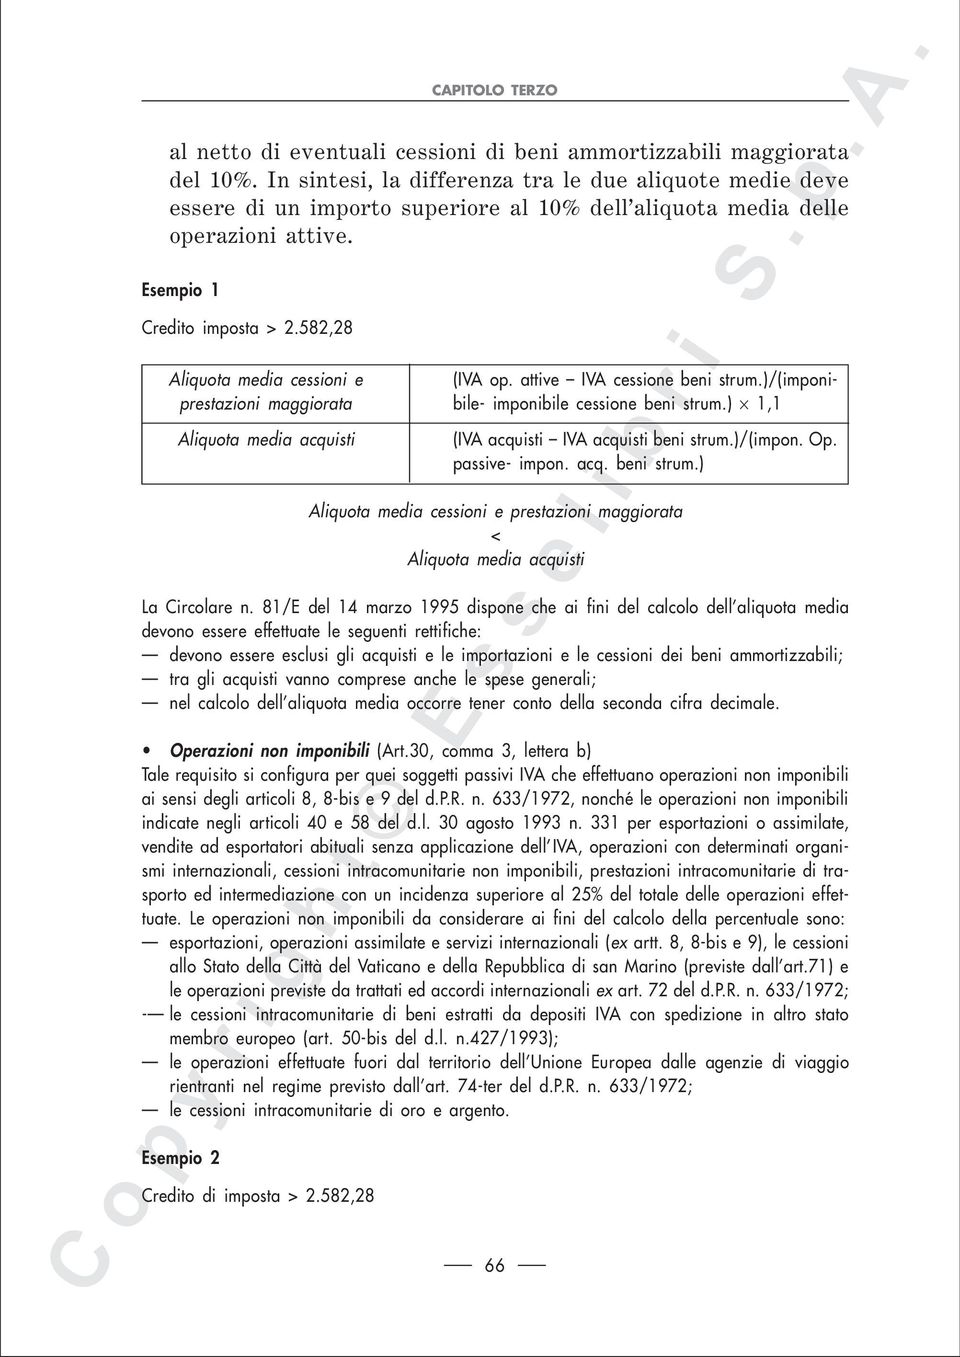 582,28 Aliquota media cessioni e (IVA op. attive IVA cessione beni strum.)/(imponiprestazioni maggiorata bile- imponibile cessione beni strum.